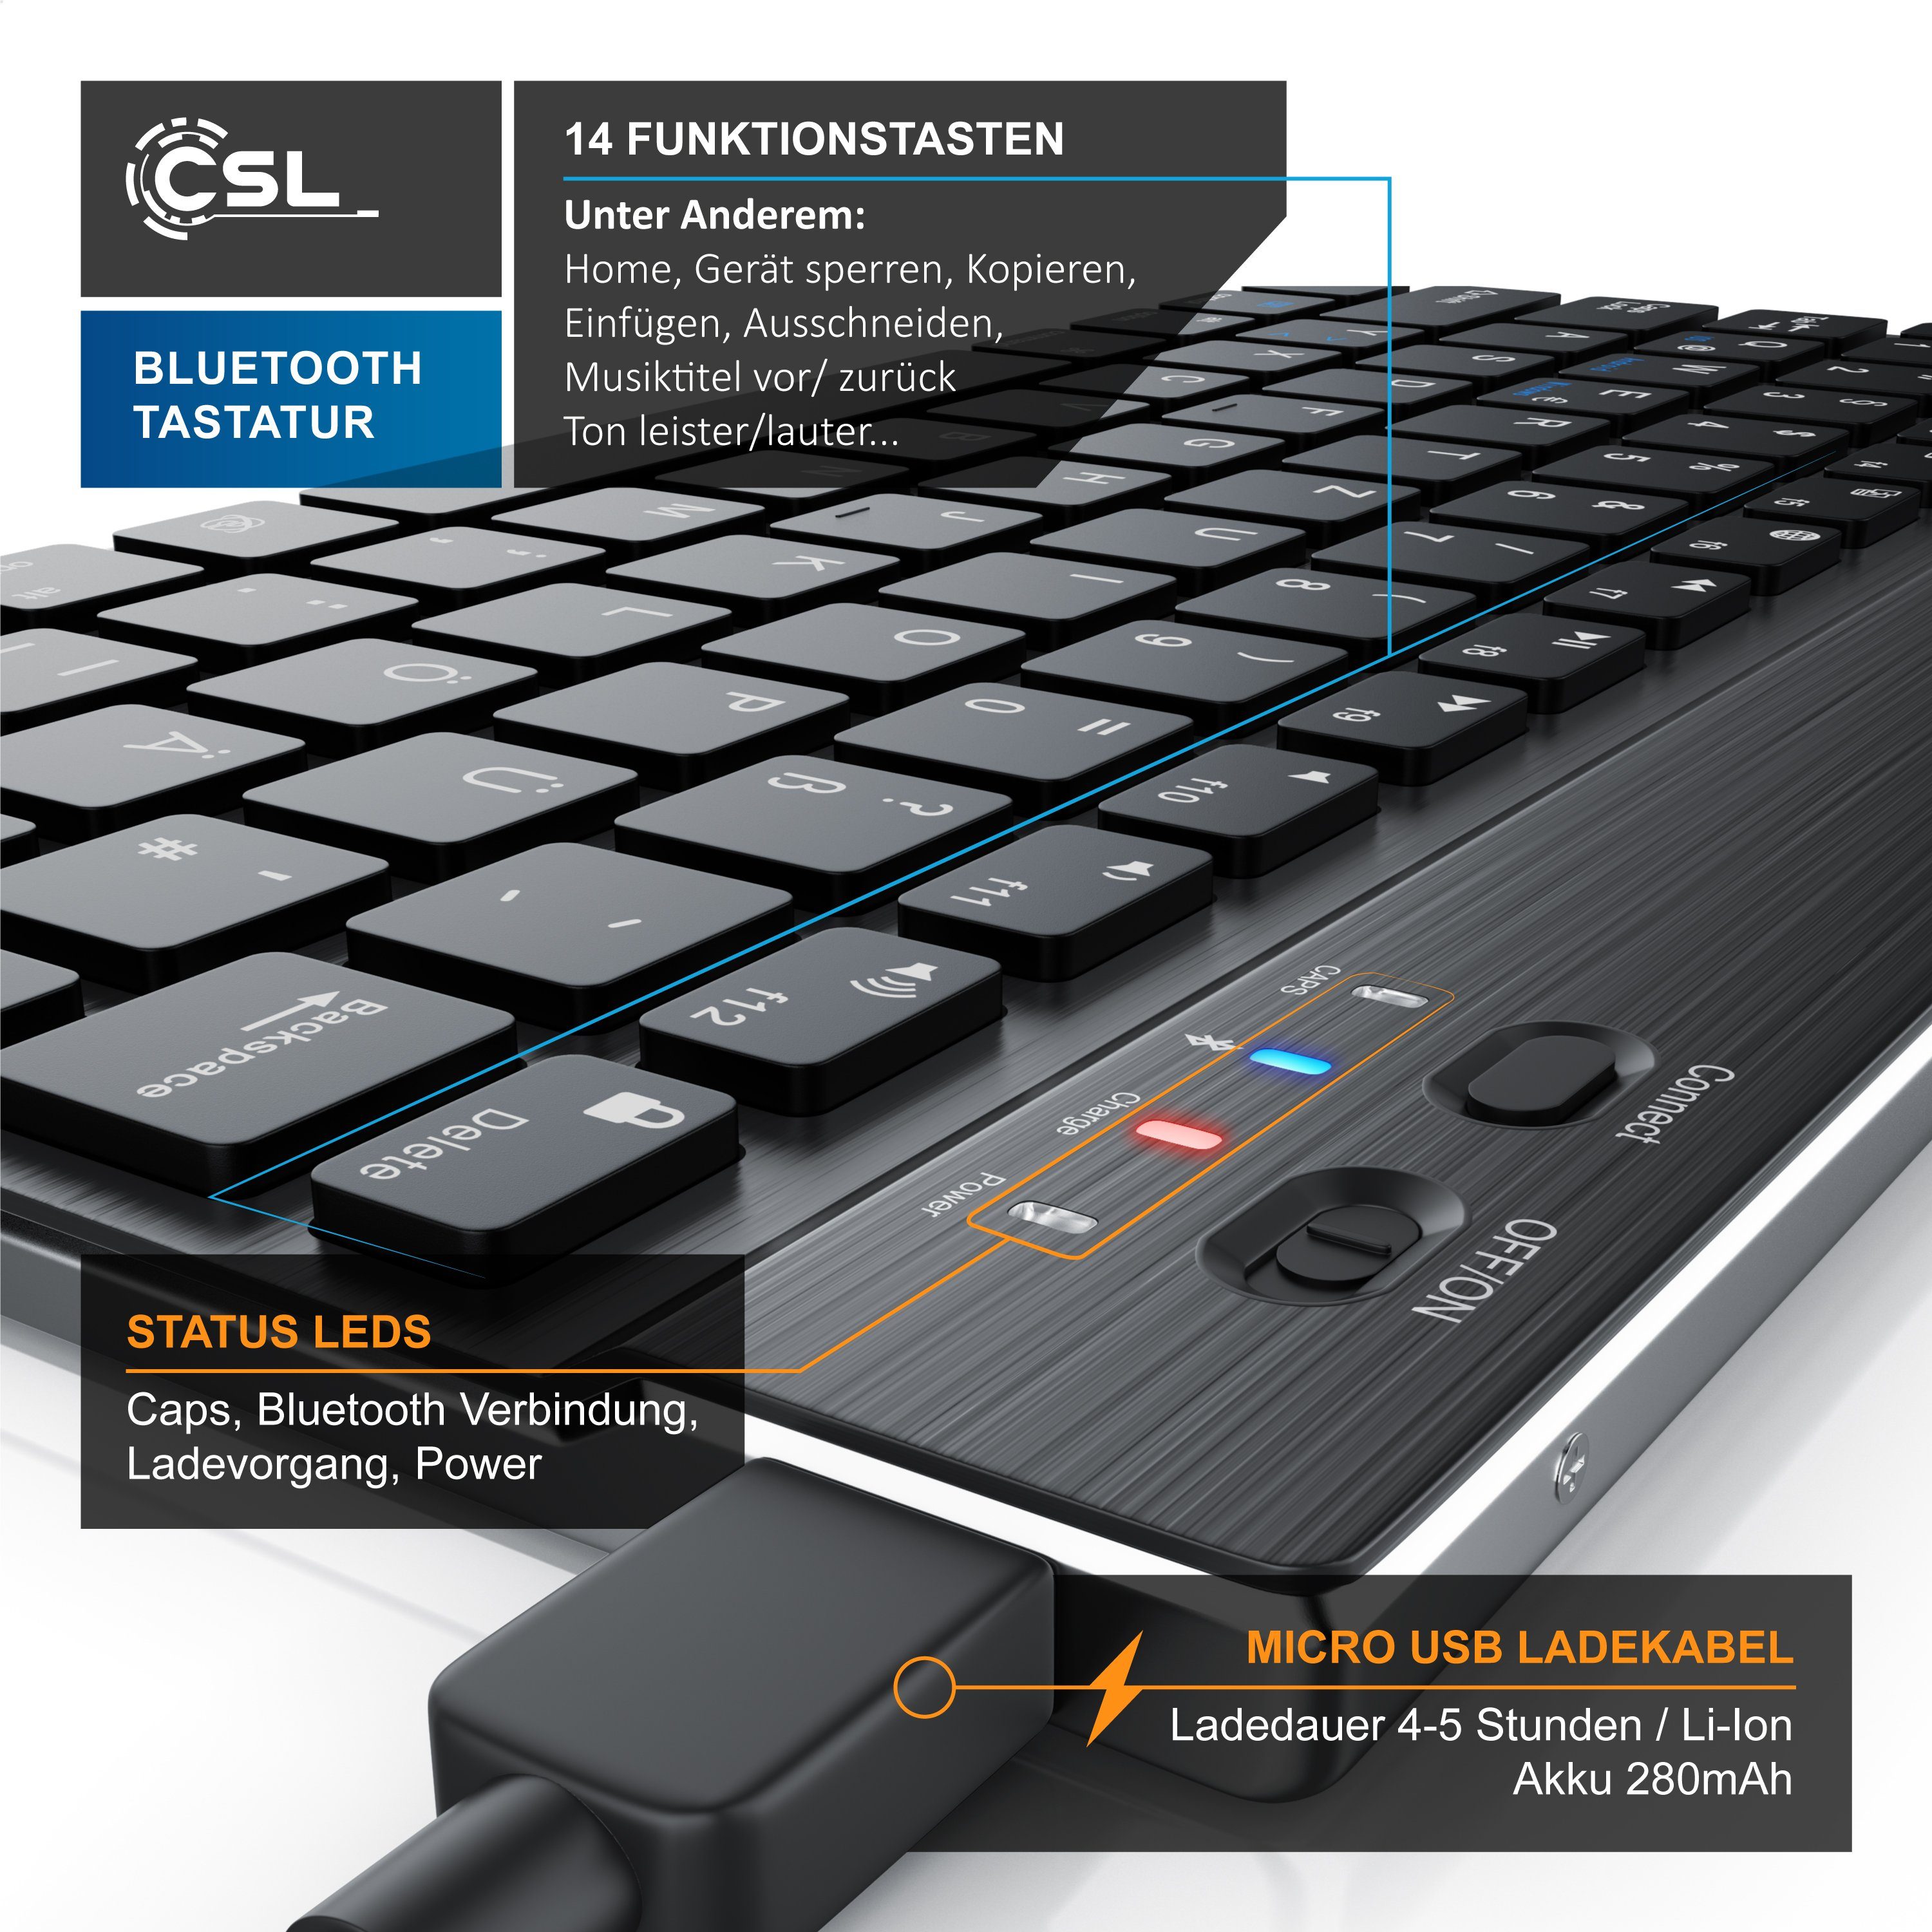 CSL Wireless-Tastatur (Ultra Slim Keyboard, Layout, Alugehäuse, 3.0) BT schwarz/silber Deutsches Bluetooth